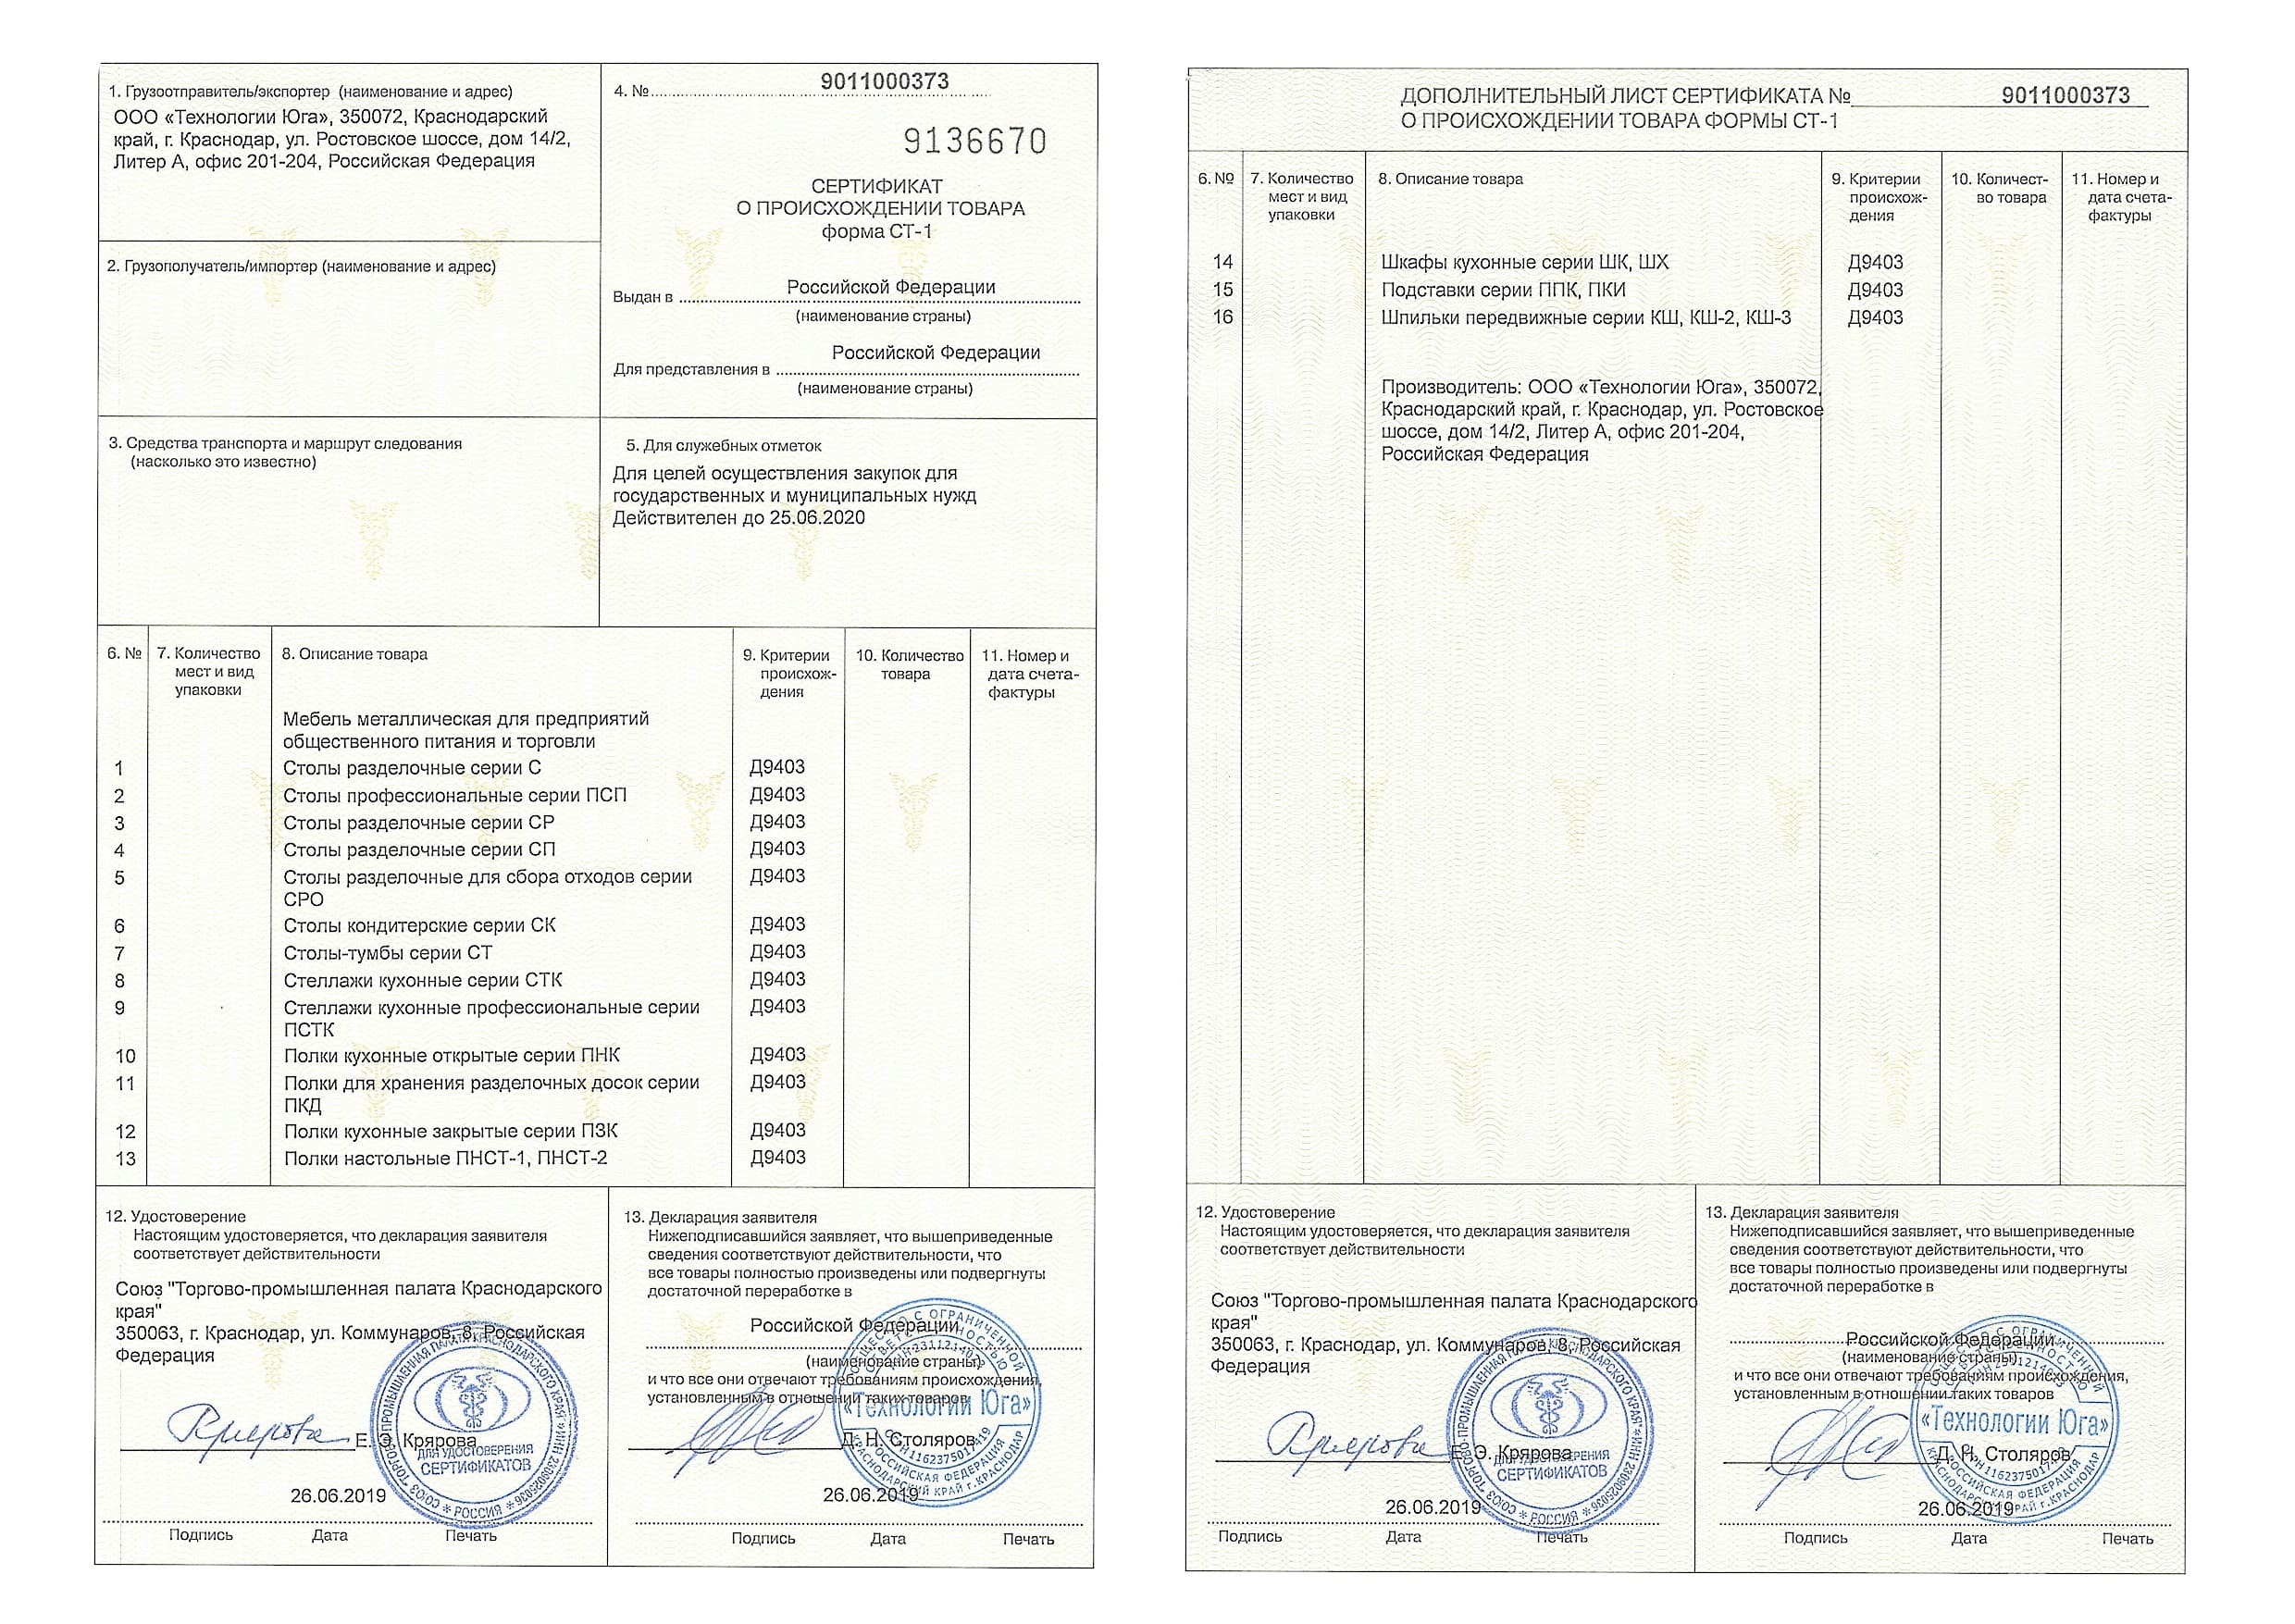 Сертификат российского производителя ст-1